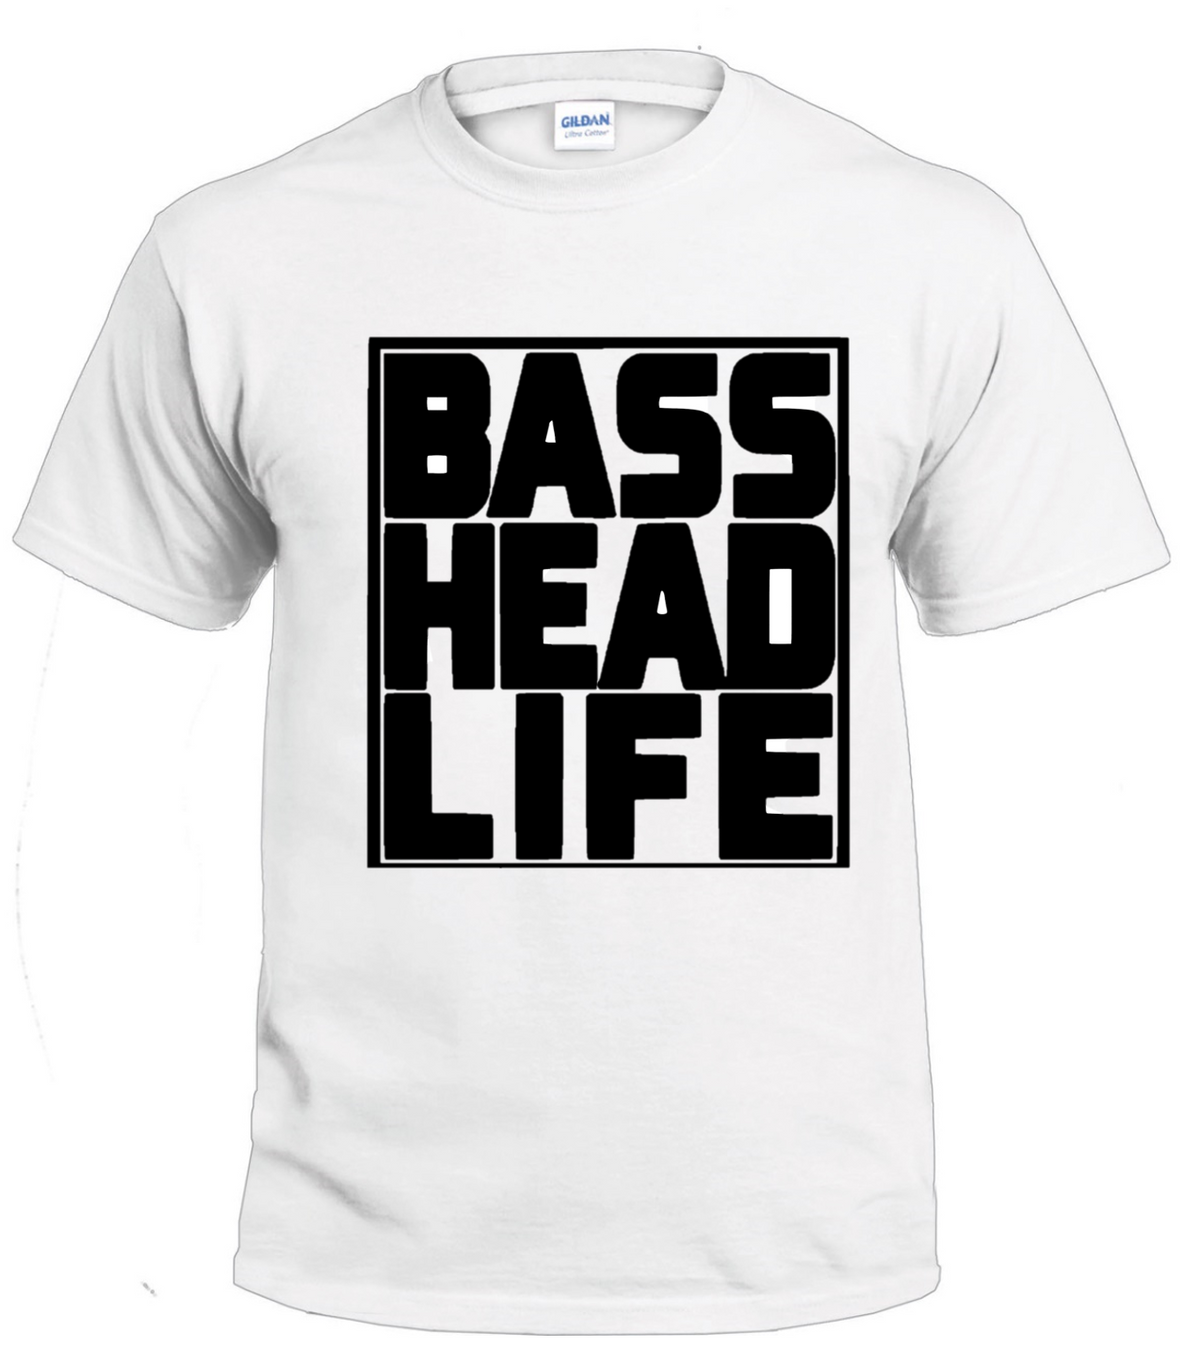 Basshead Life Basshead tshirt